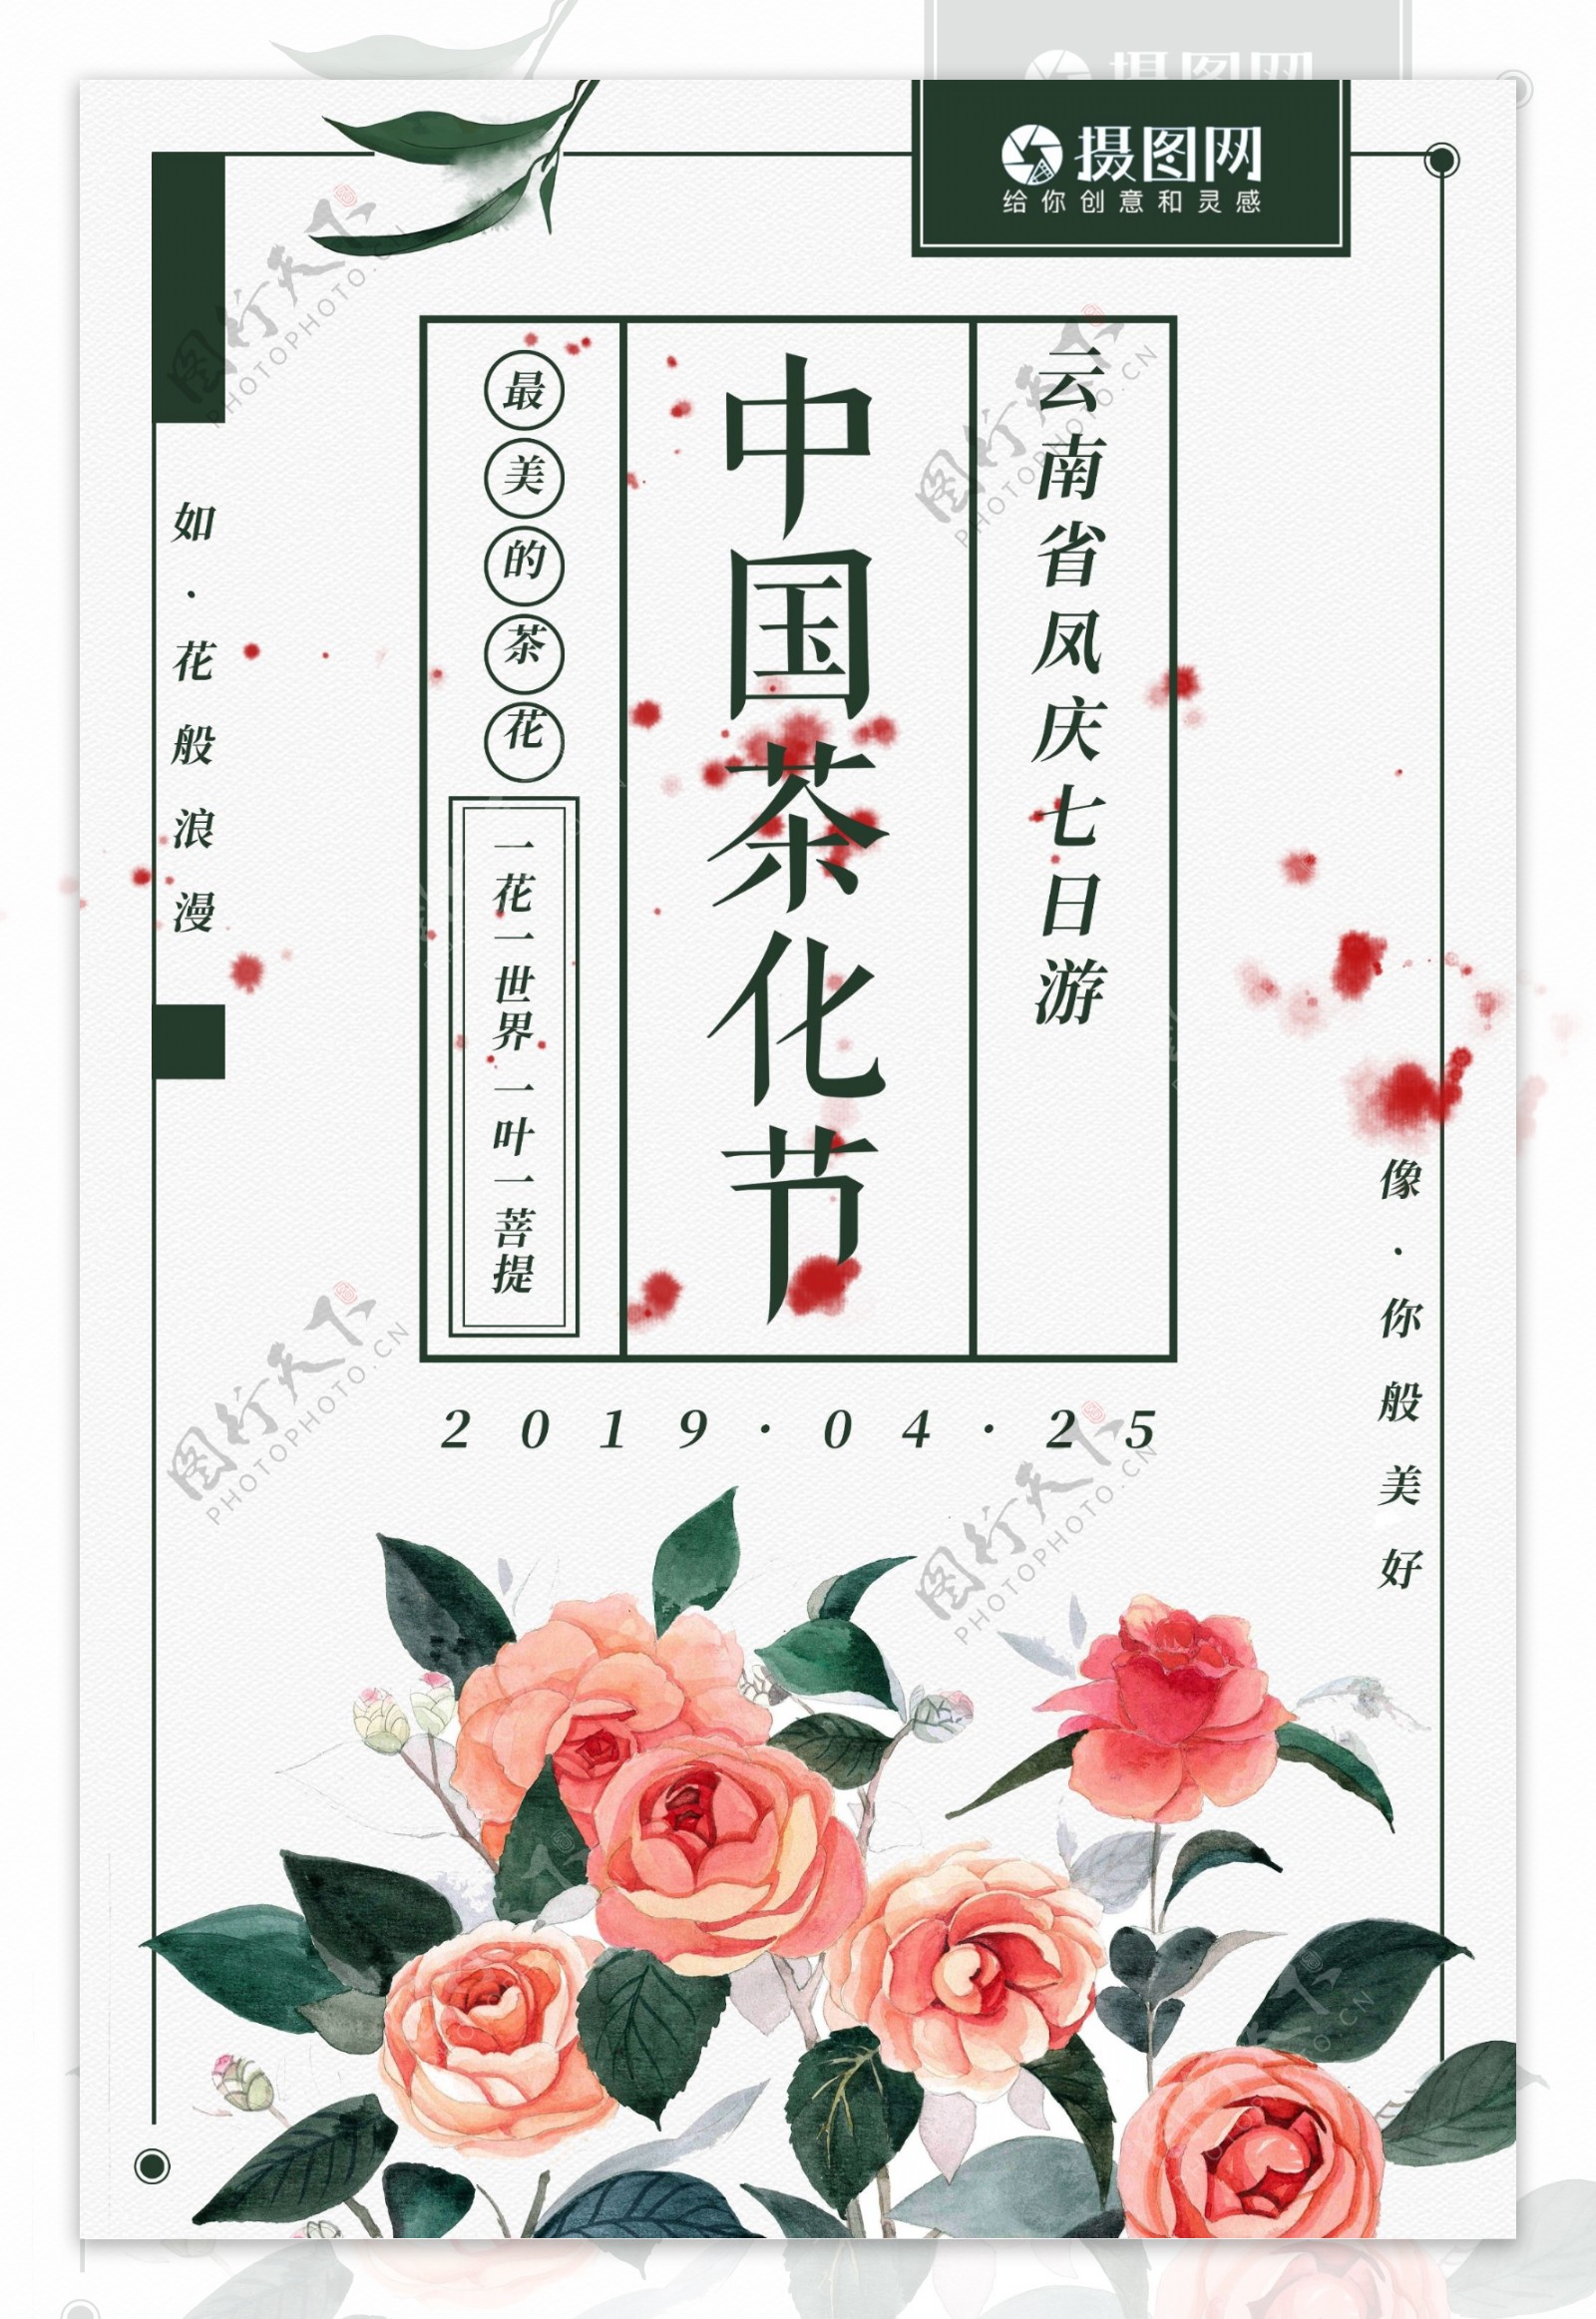 中国茶花节简约清新旅游海报